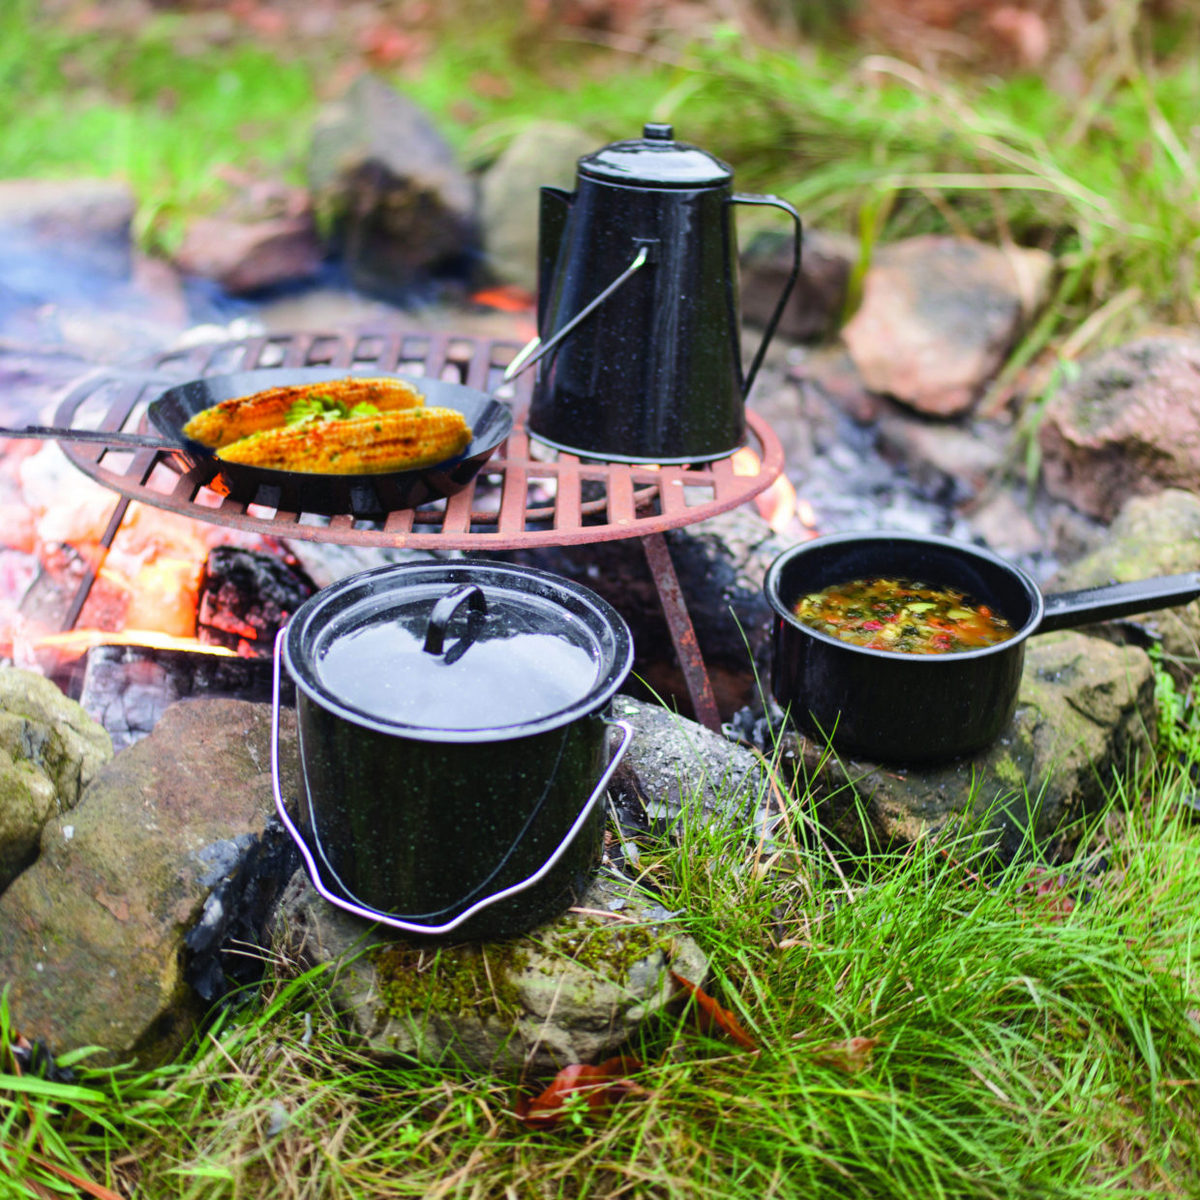 esschert design set de cuisiner en plein air pour camping une idee cadeau chez ugo et lea (1)